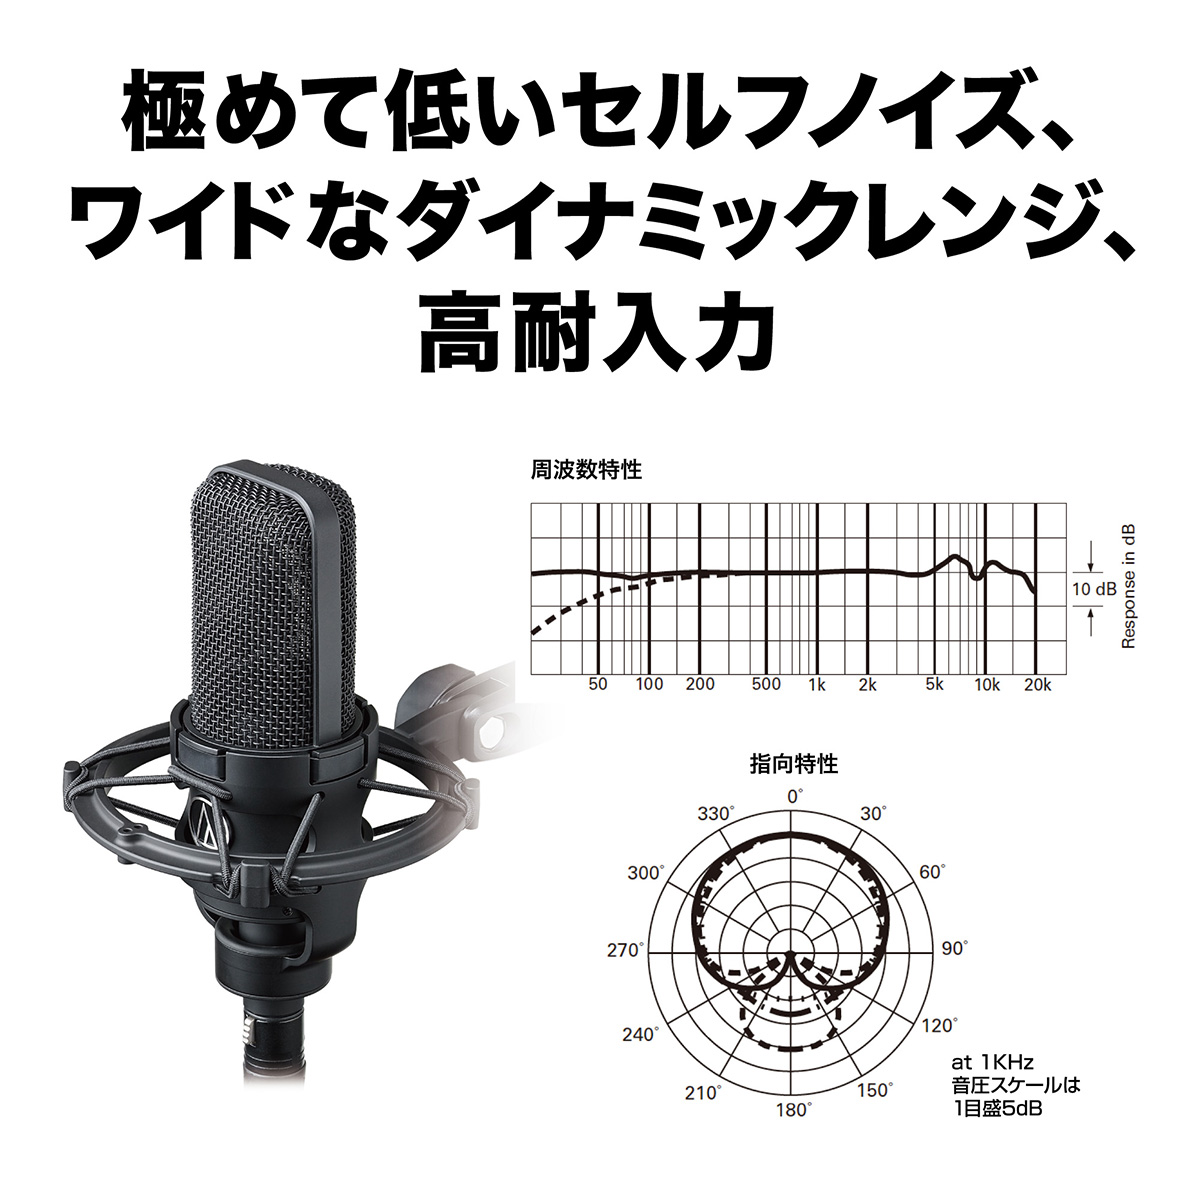 audio-technica AT4040 コンデンサーマイク 専用ショックマウント付属 